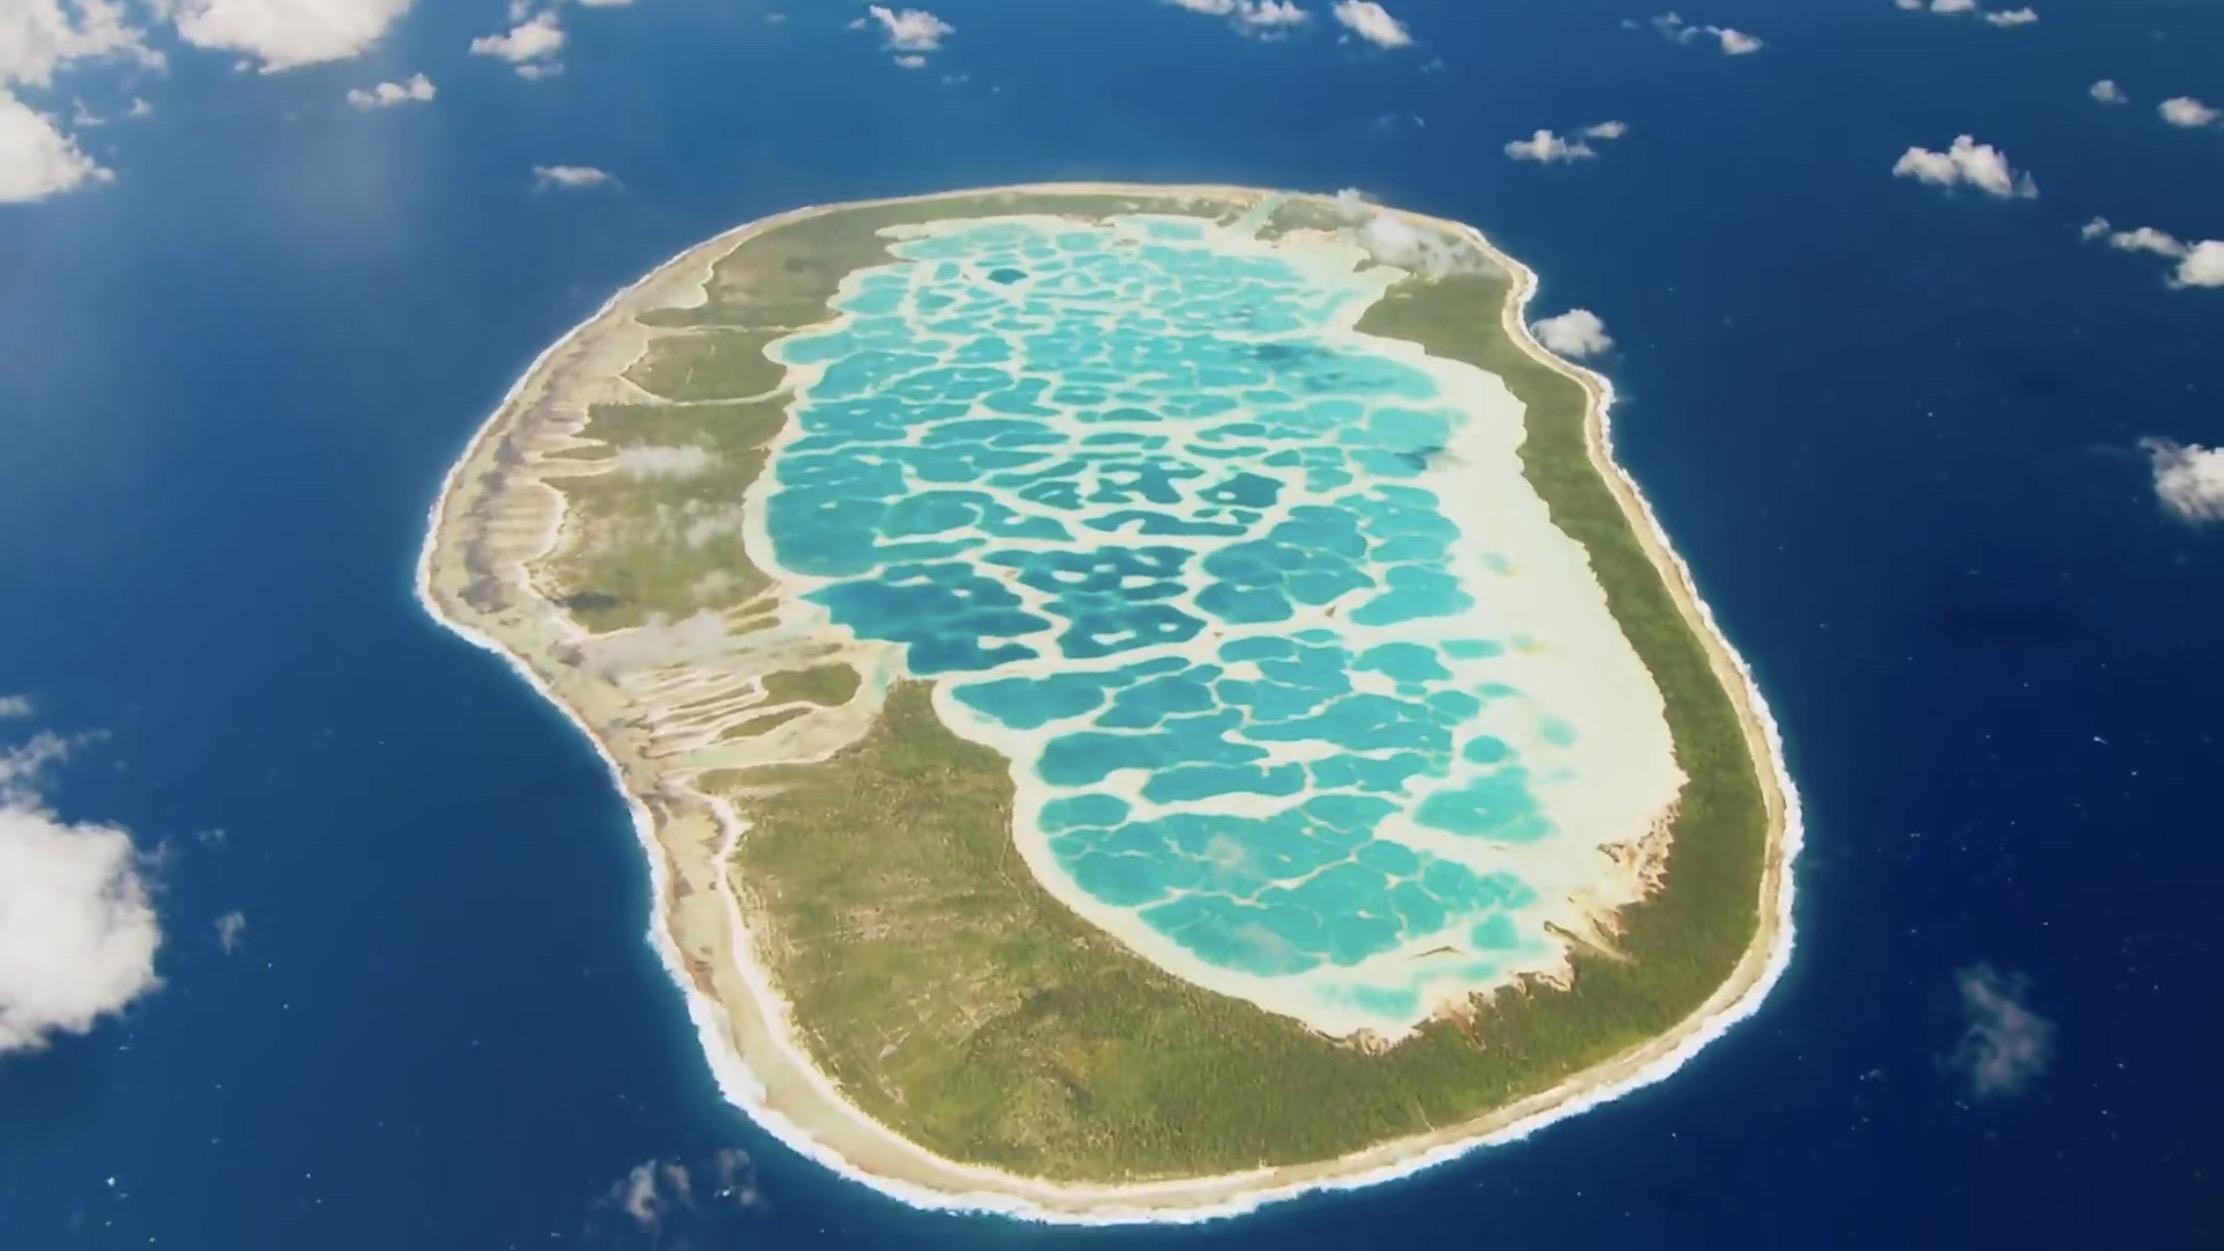 世界上最大的弧形群岛图片